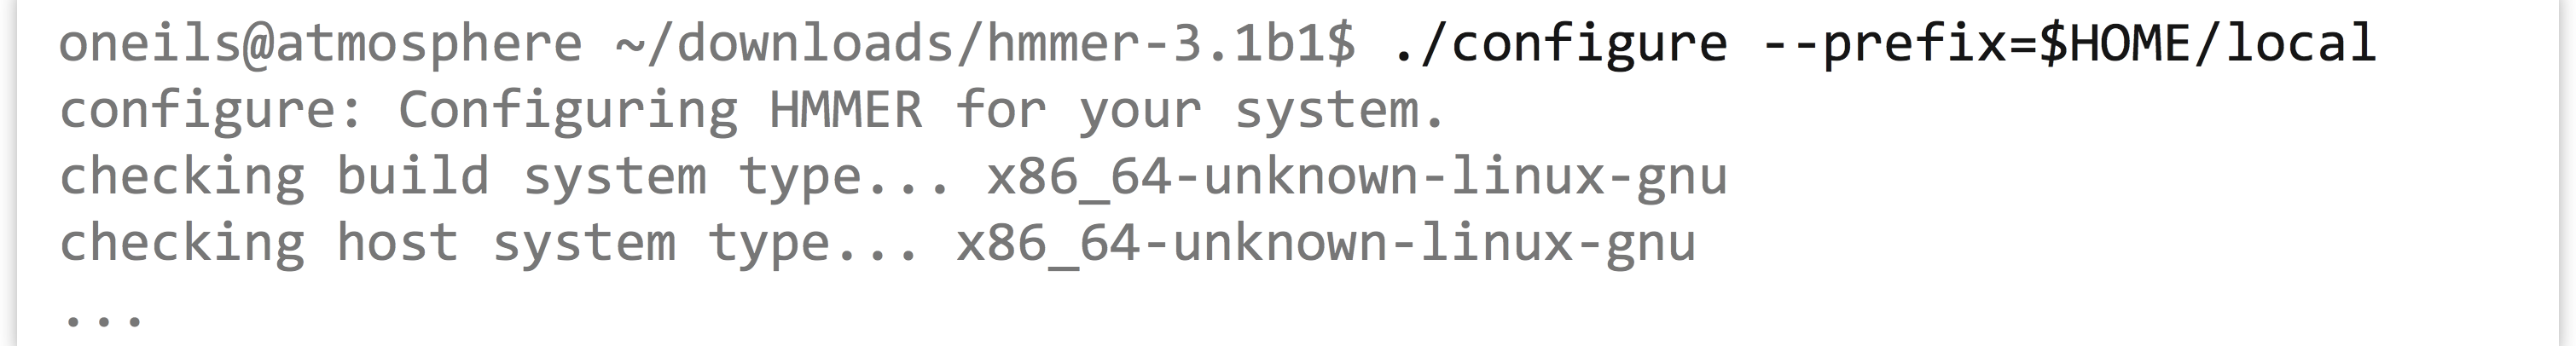 I.6_12_unix_66_configure_prefix